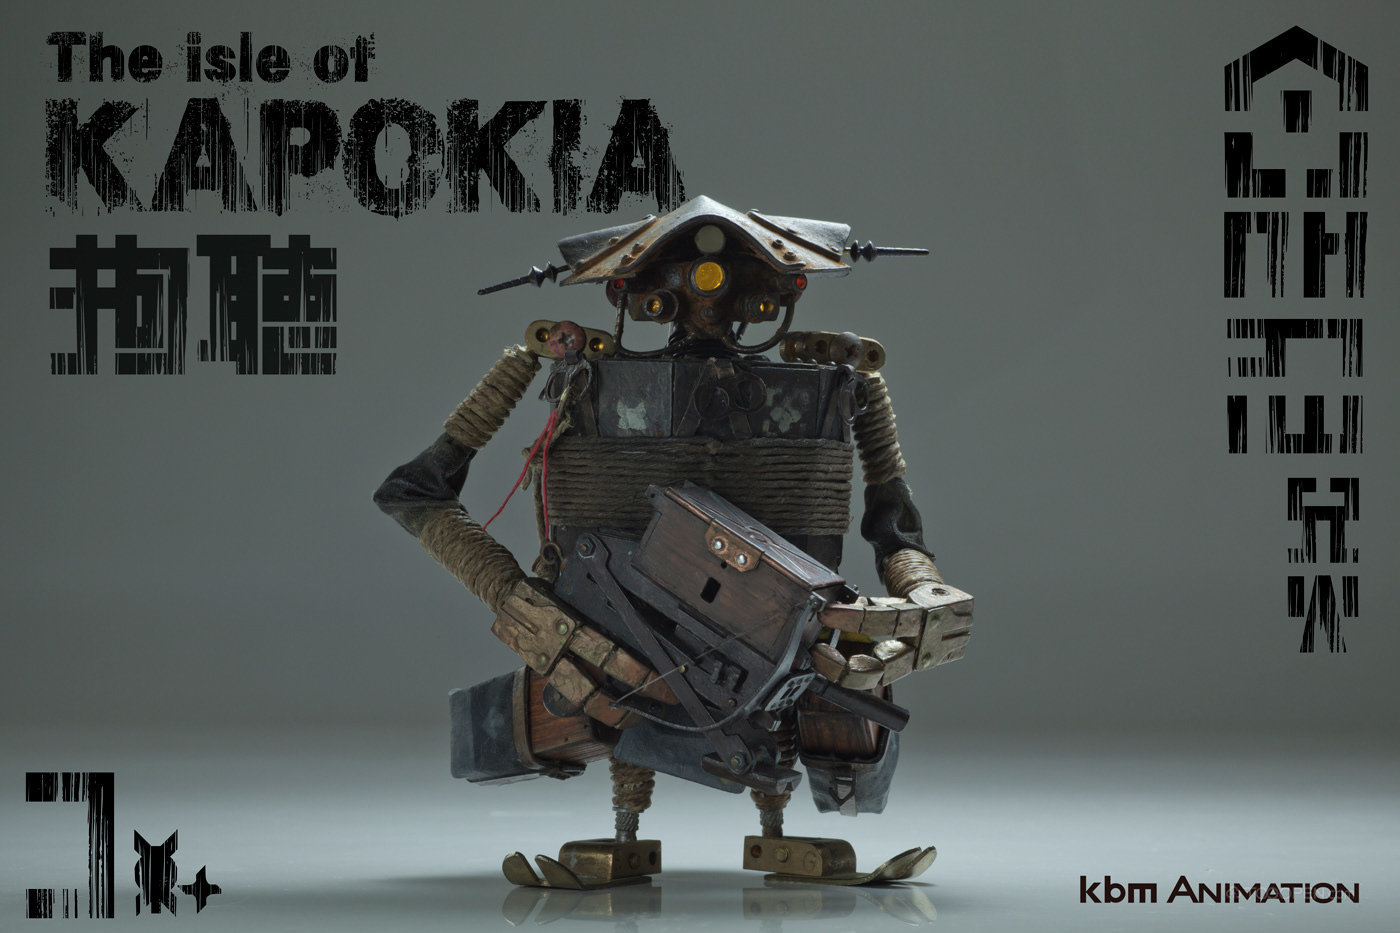 卡波基岛鲸波机器人模型手办玩具设计欣赏-15